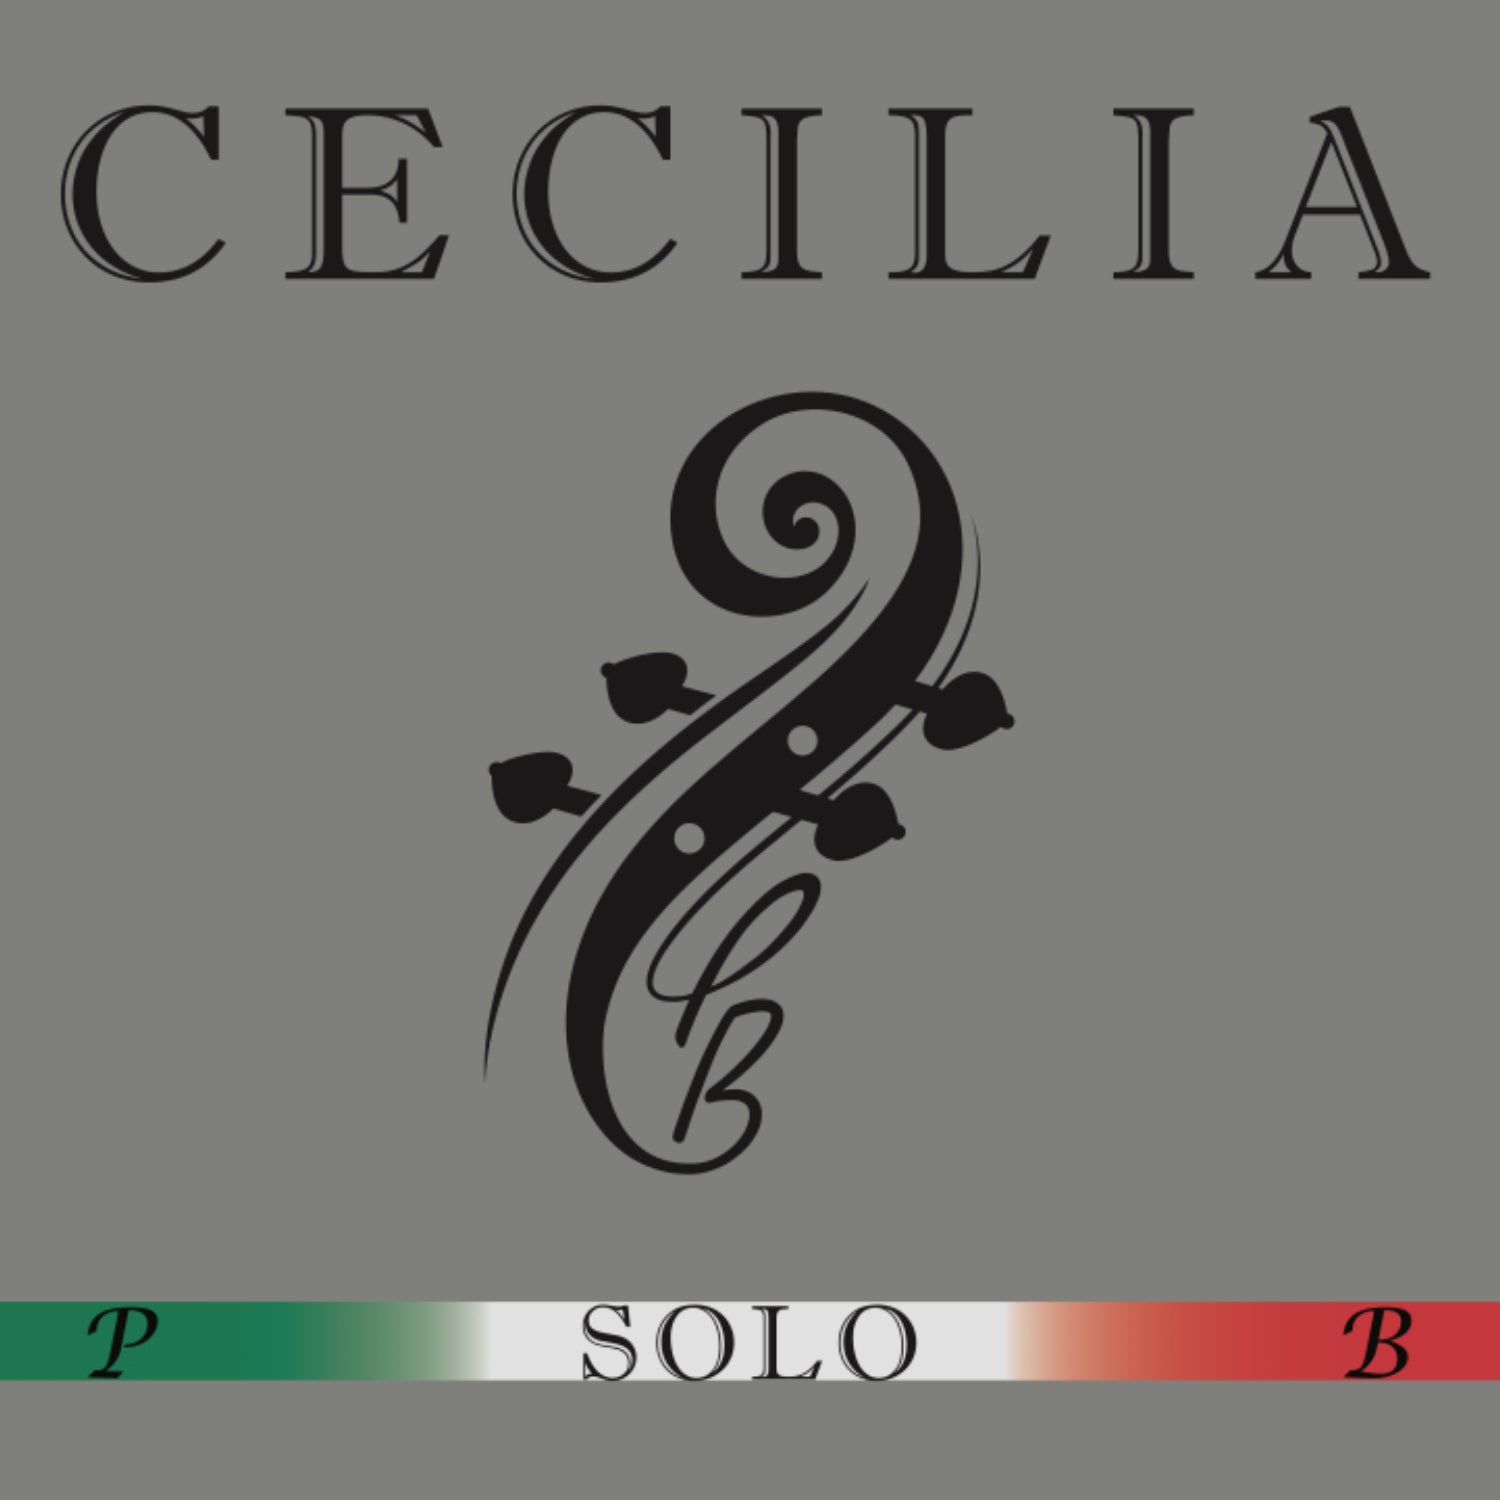 CECILIA SOLO Cello